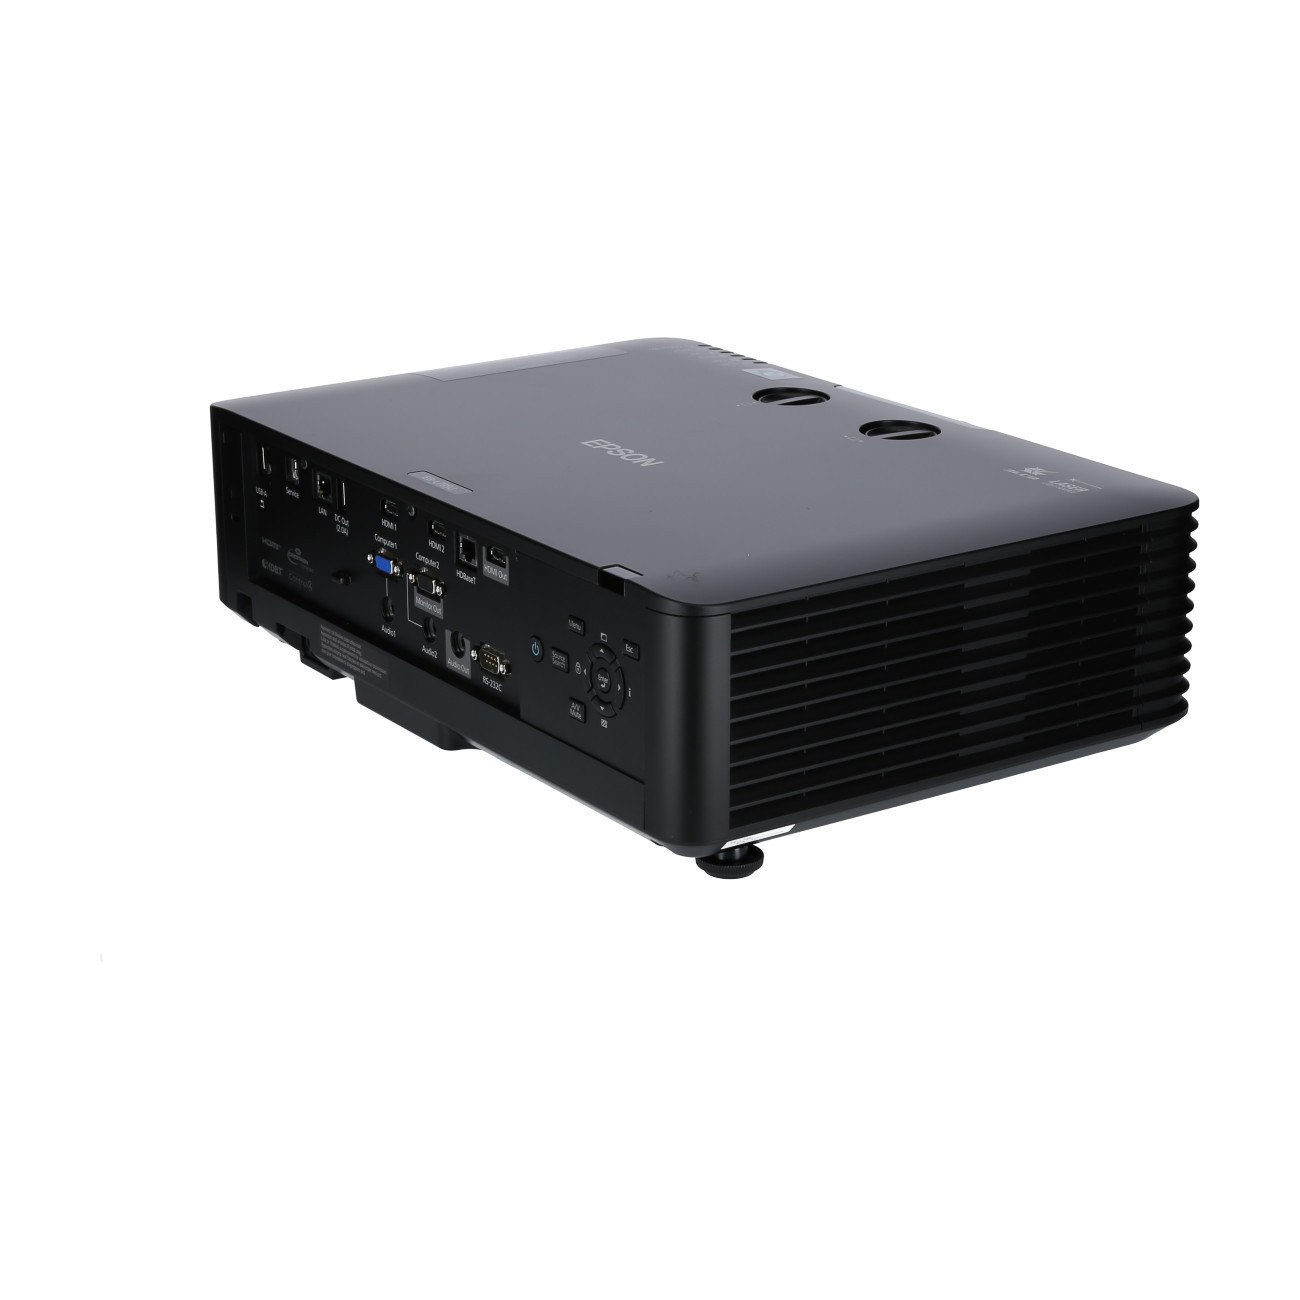 Vorschau: Epson EB-L735U schwarz Laser-Beamer mit 7000 ANSI-Lumen und WUXGA Auflösung - Demo